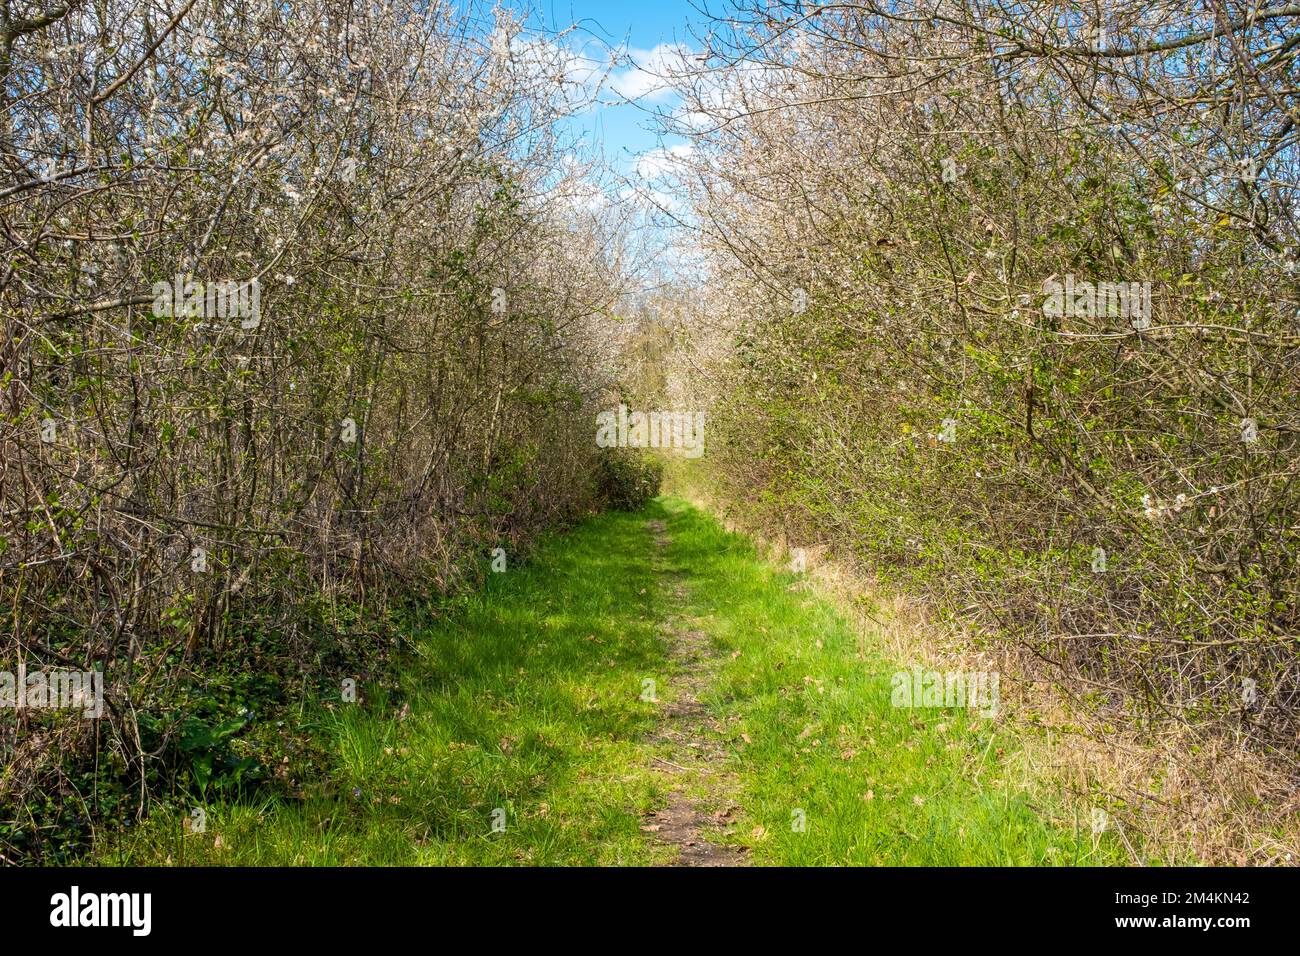 Un sentier droit avec des bords des deux côtés en buissons. Pris au printemps en France par une journée ensoleillée. Banque D'Images